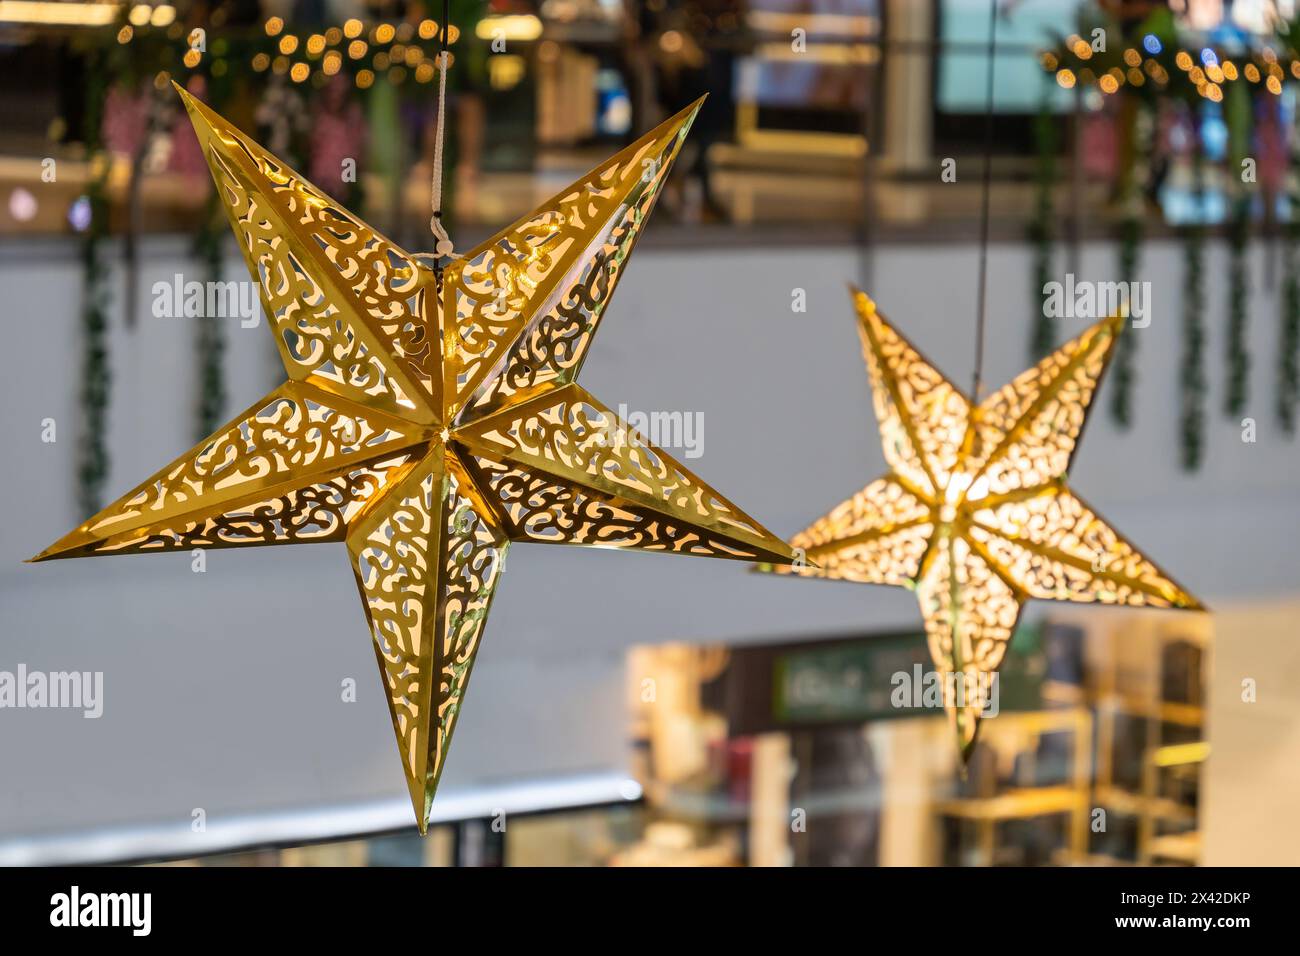 Vue rapprochée de la décoration des étoiles brillantes accrochée dans le centre commercial pendant la célébration Joyeux Noël. Banque D'Images